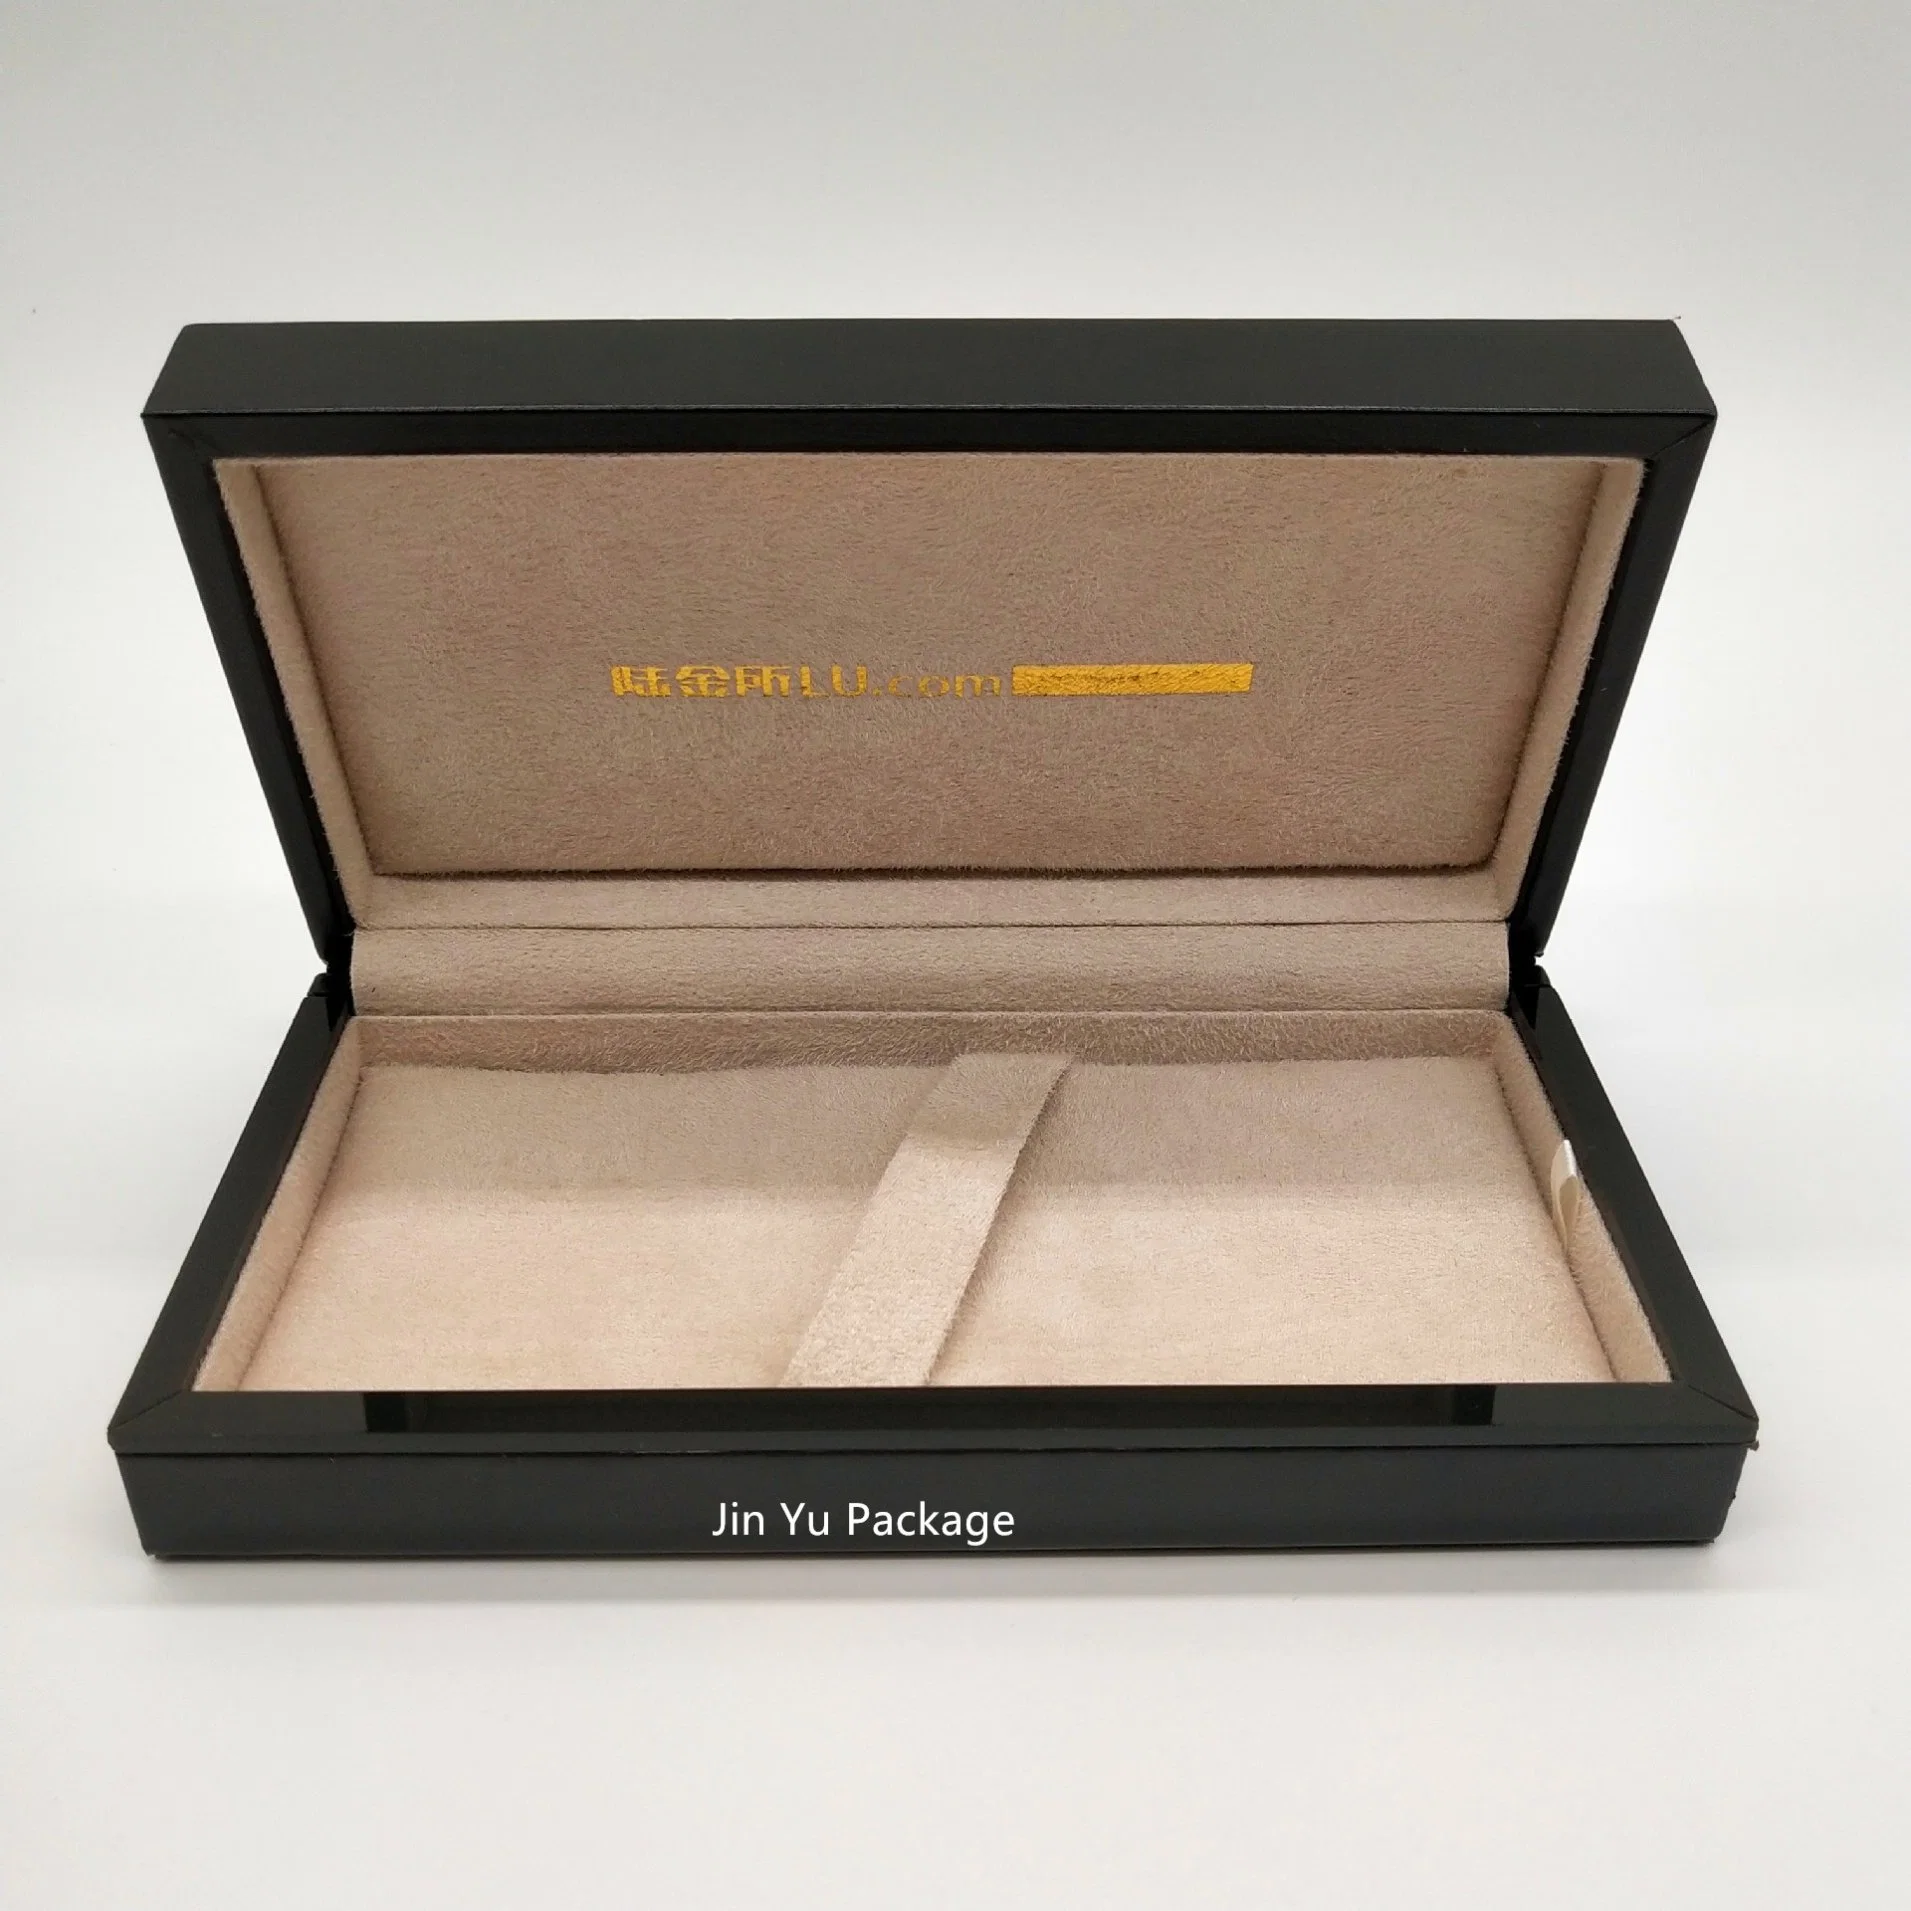 Роскошный кожаный чехол из дерева в подарочной упаковке пера упаковки пальчикового типа коробок оптовая торговля